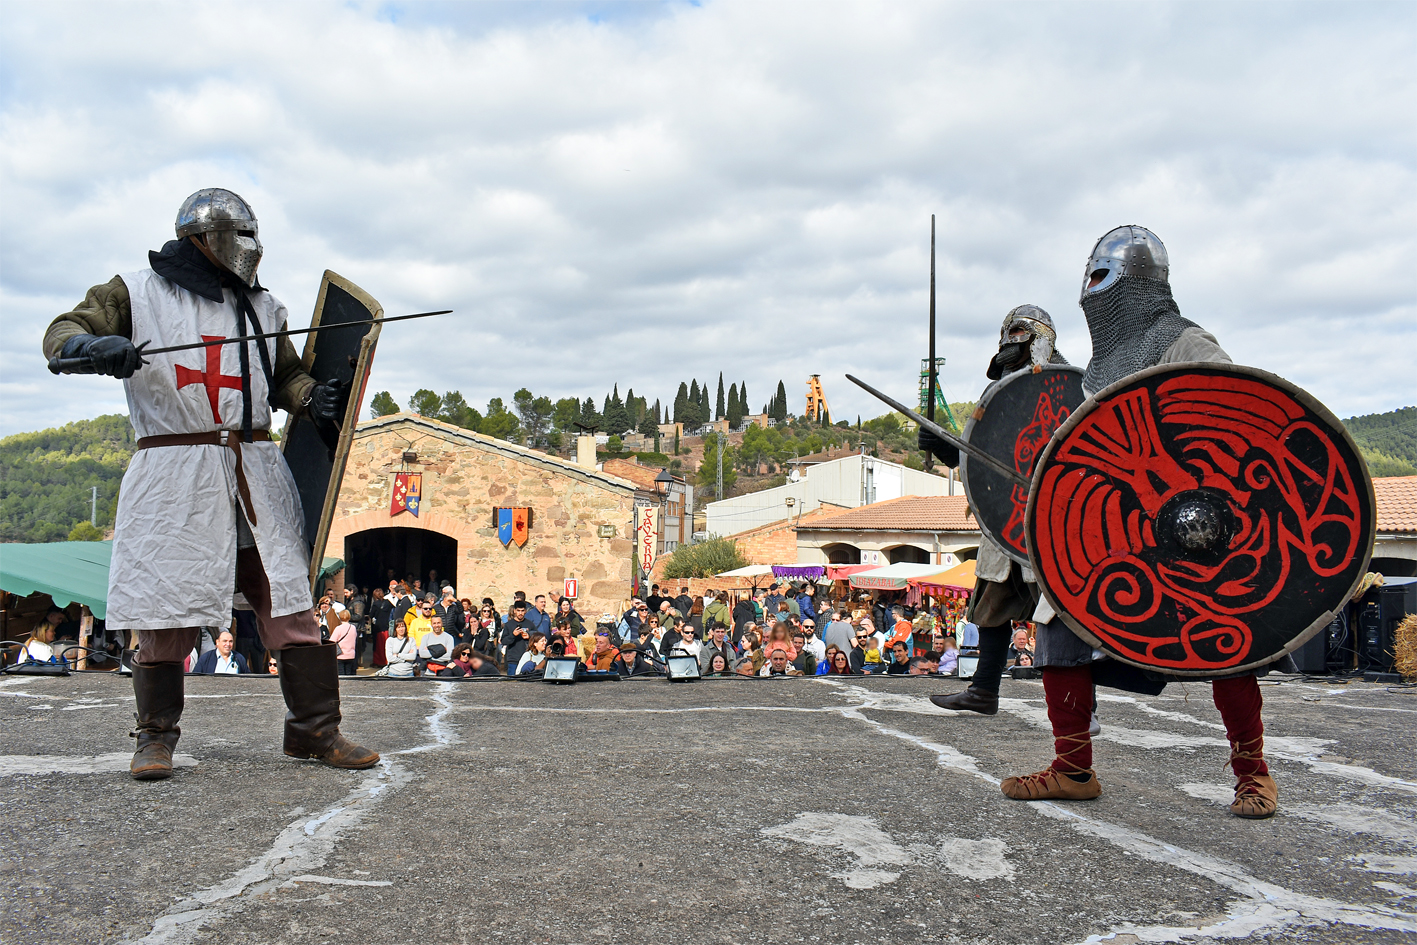 DemostraciÃ³ de lluita de cavallers a l'Era del Castell, durant la 20a Fira Medieval d'Oficis de SÃºria.